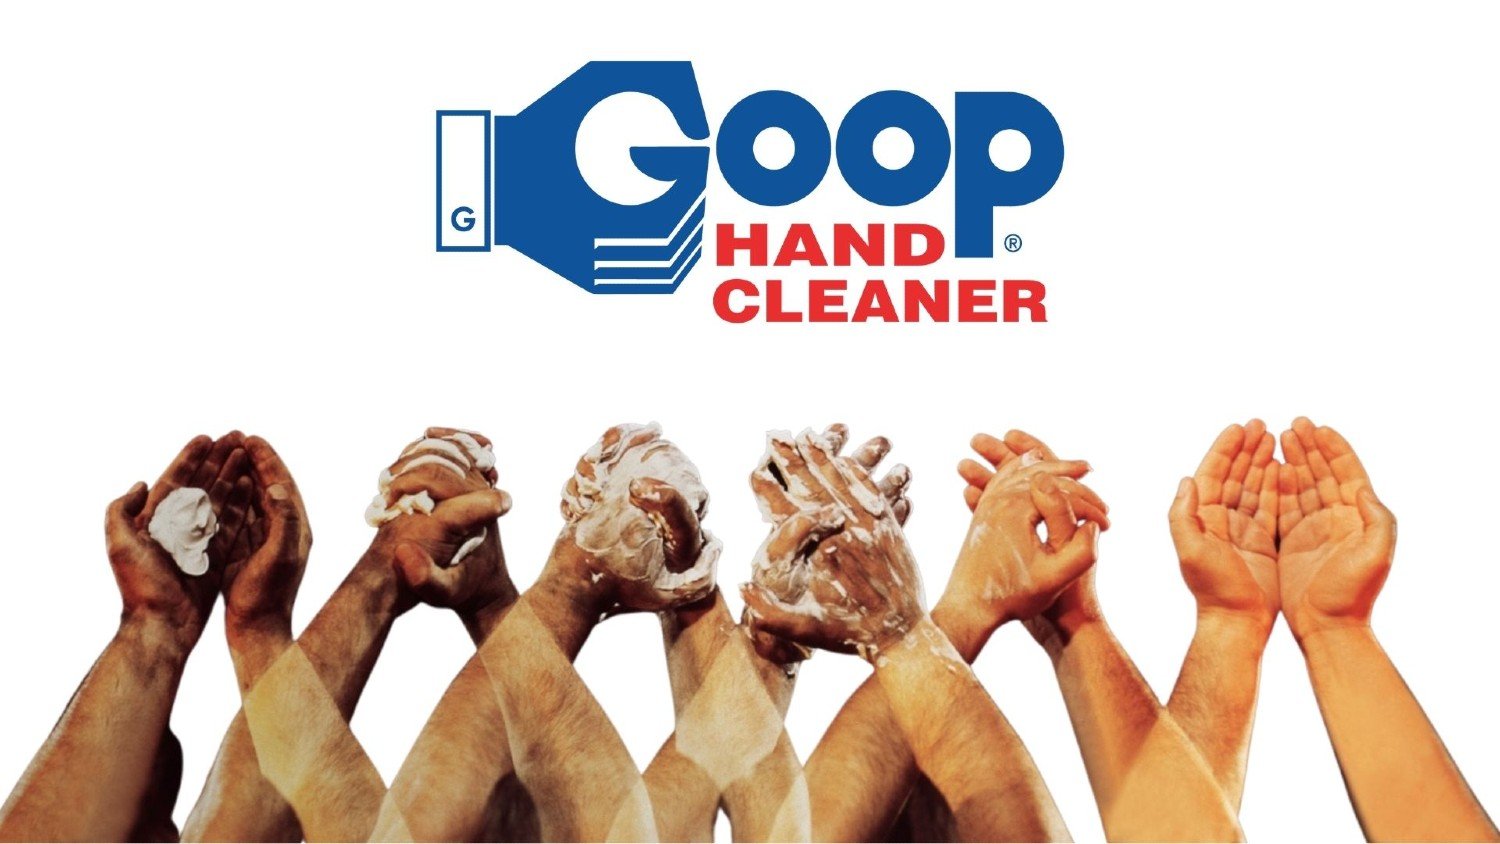 Momsgoop.com-Logo-Hands-Banner-1500x820.jpg